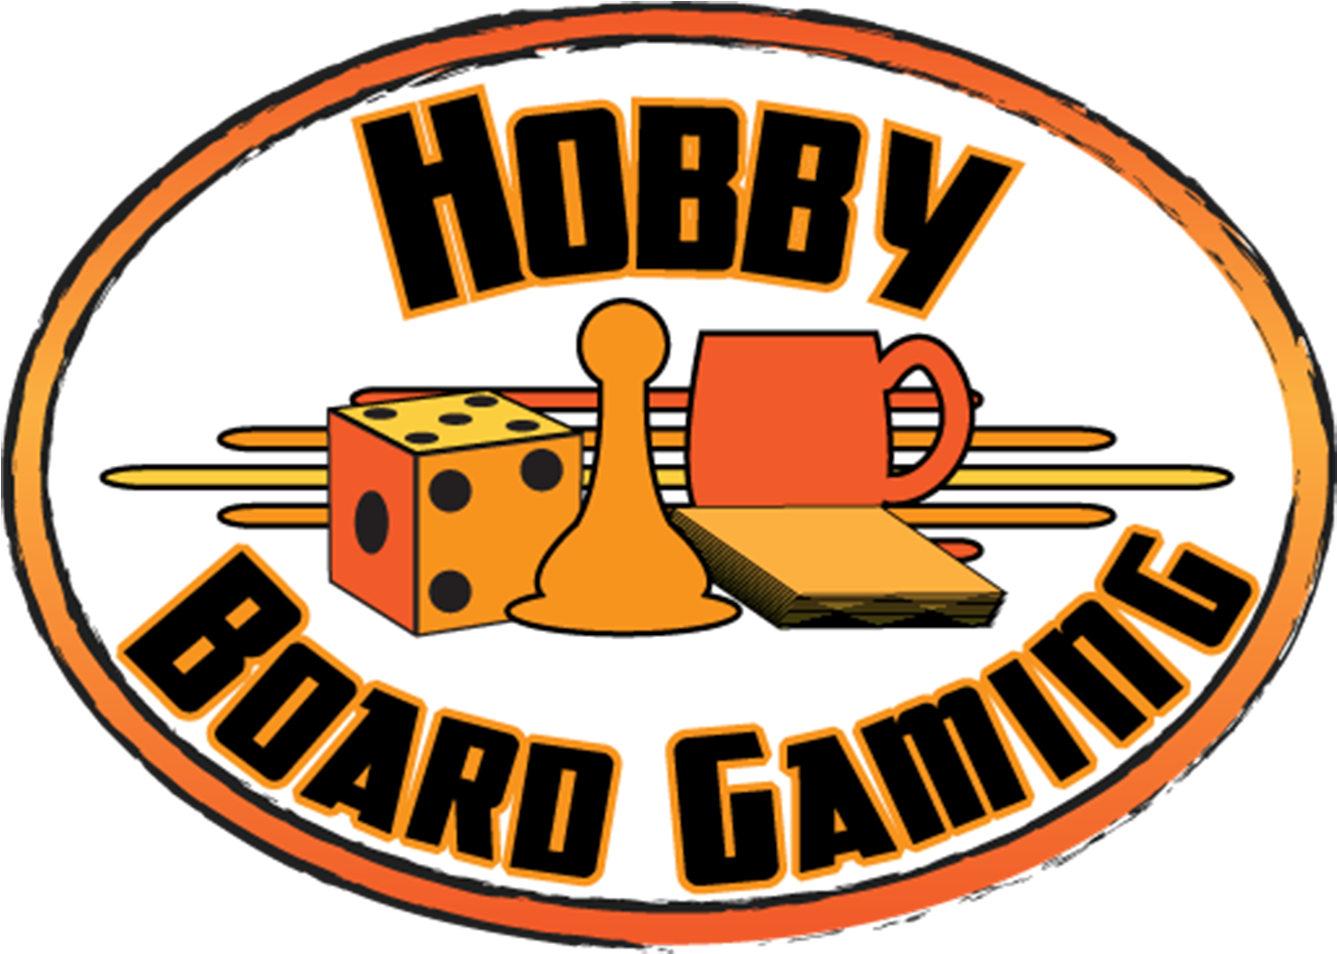 Hobby Board Gaming - Hobby Board Gaming (1400x1400)